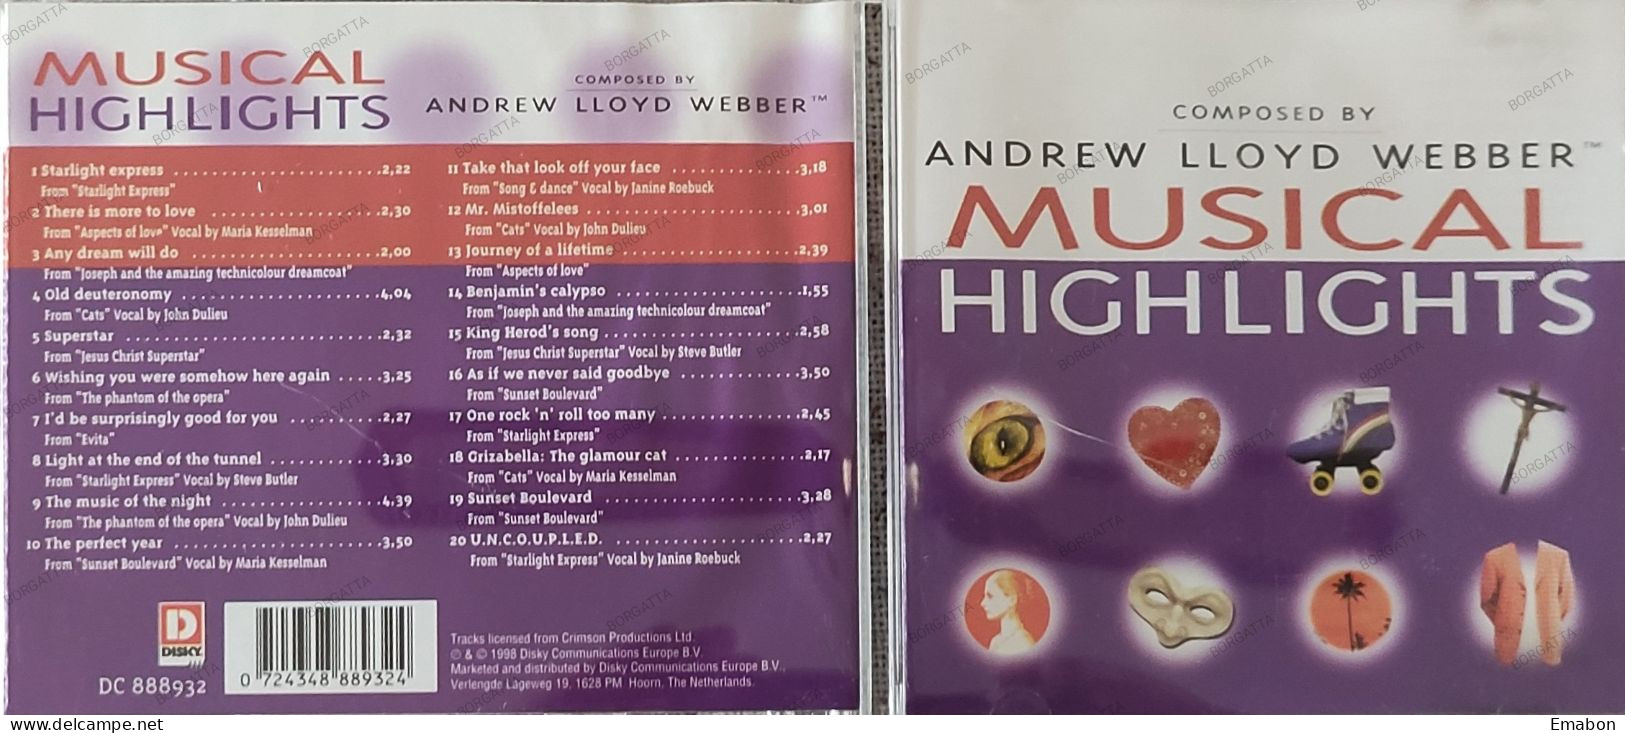 BORGATTA - FILM MUSIC - Cd ANDREW LLOYD -  MUSICAL HIGHLIGHTS -  DISKY 1998 - USATO In Buono Stato - Soundtracks, Film Music